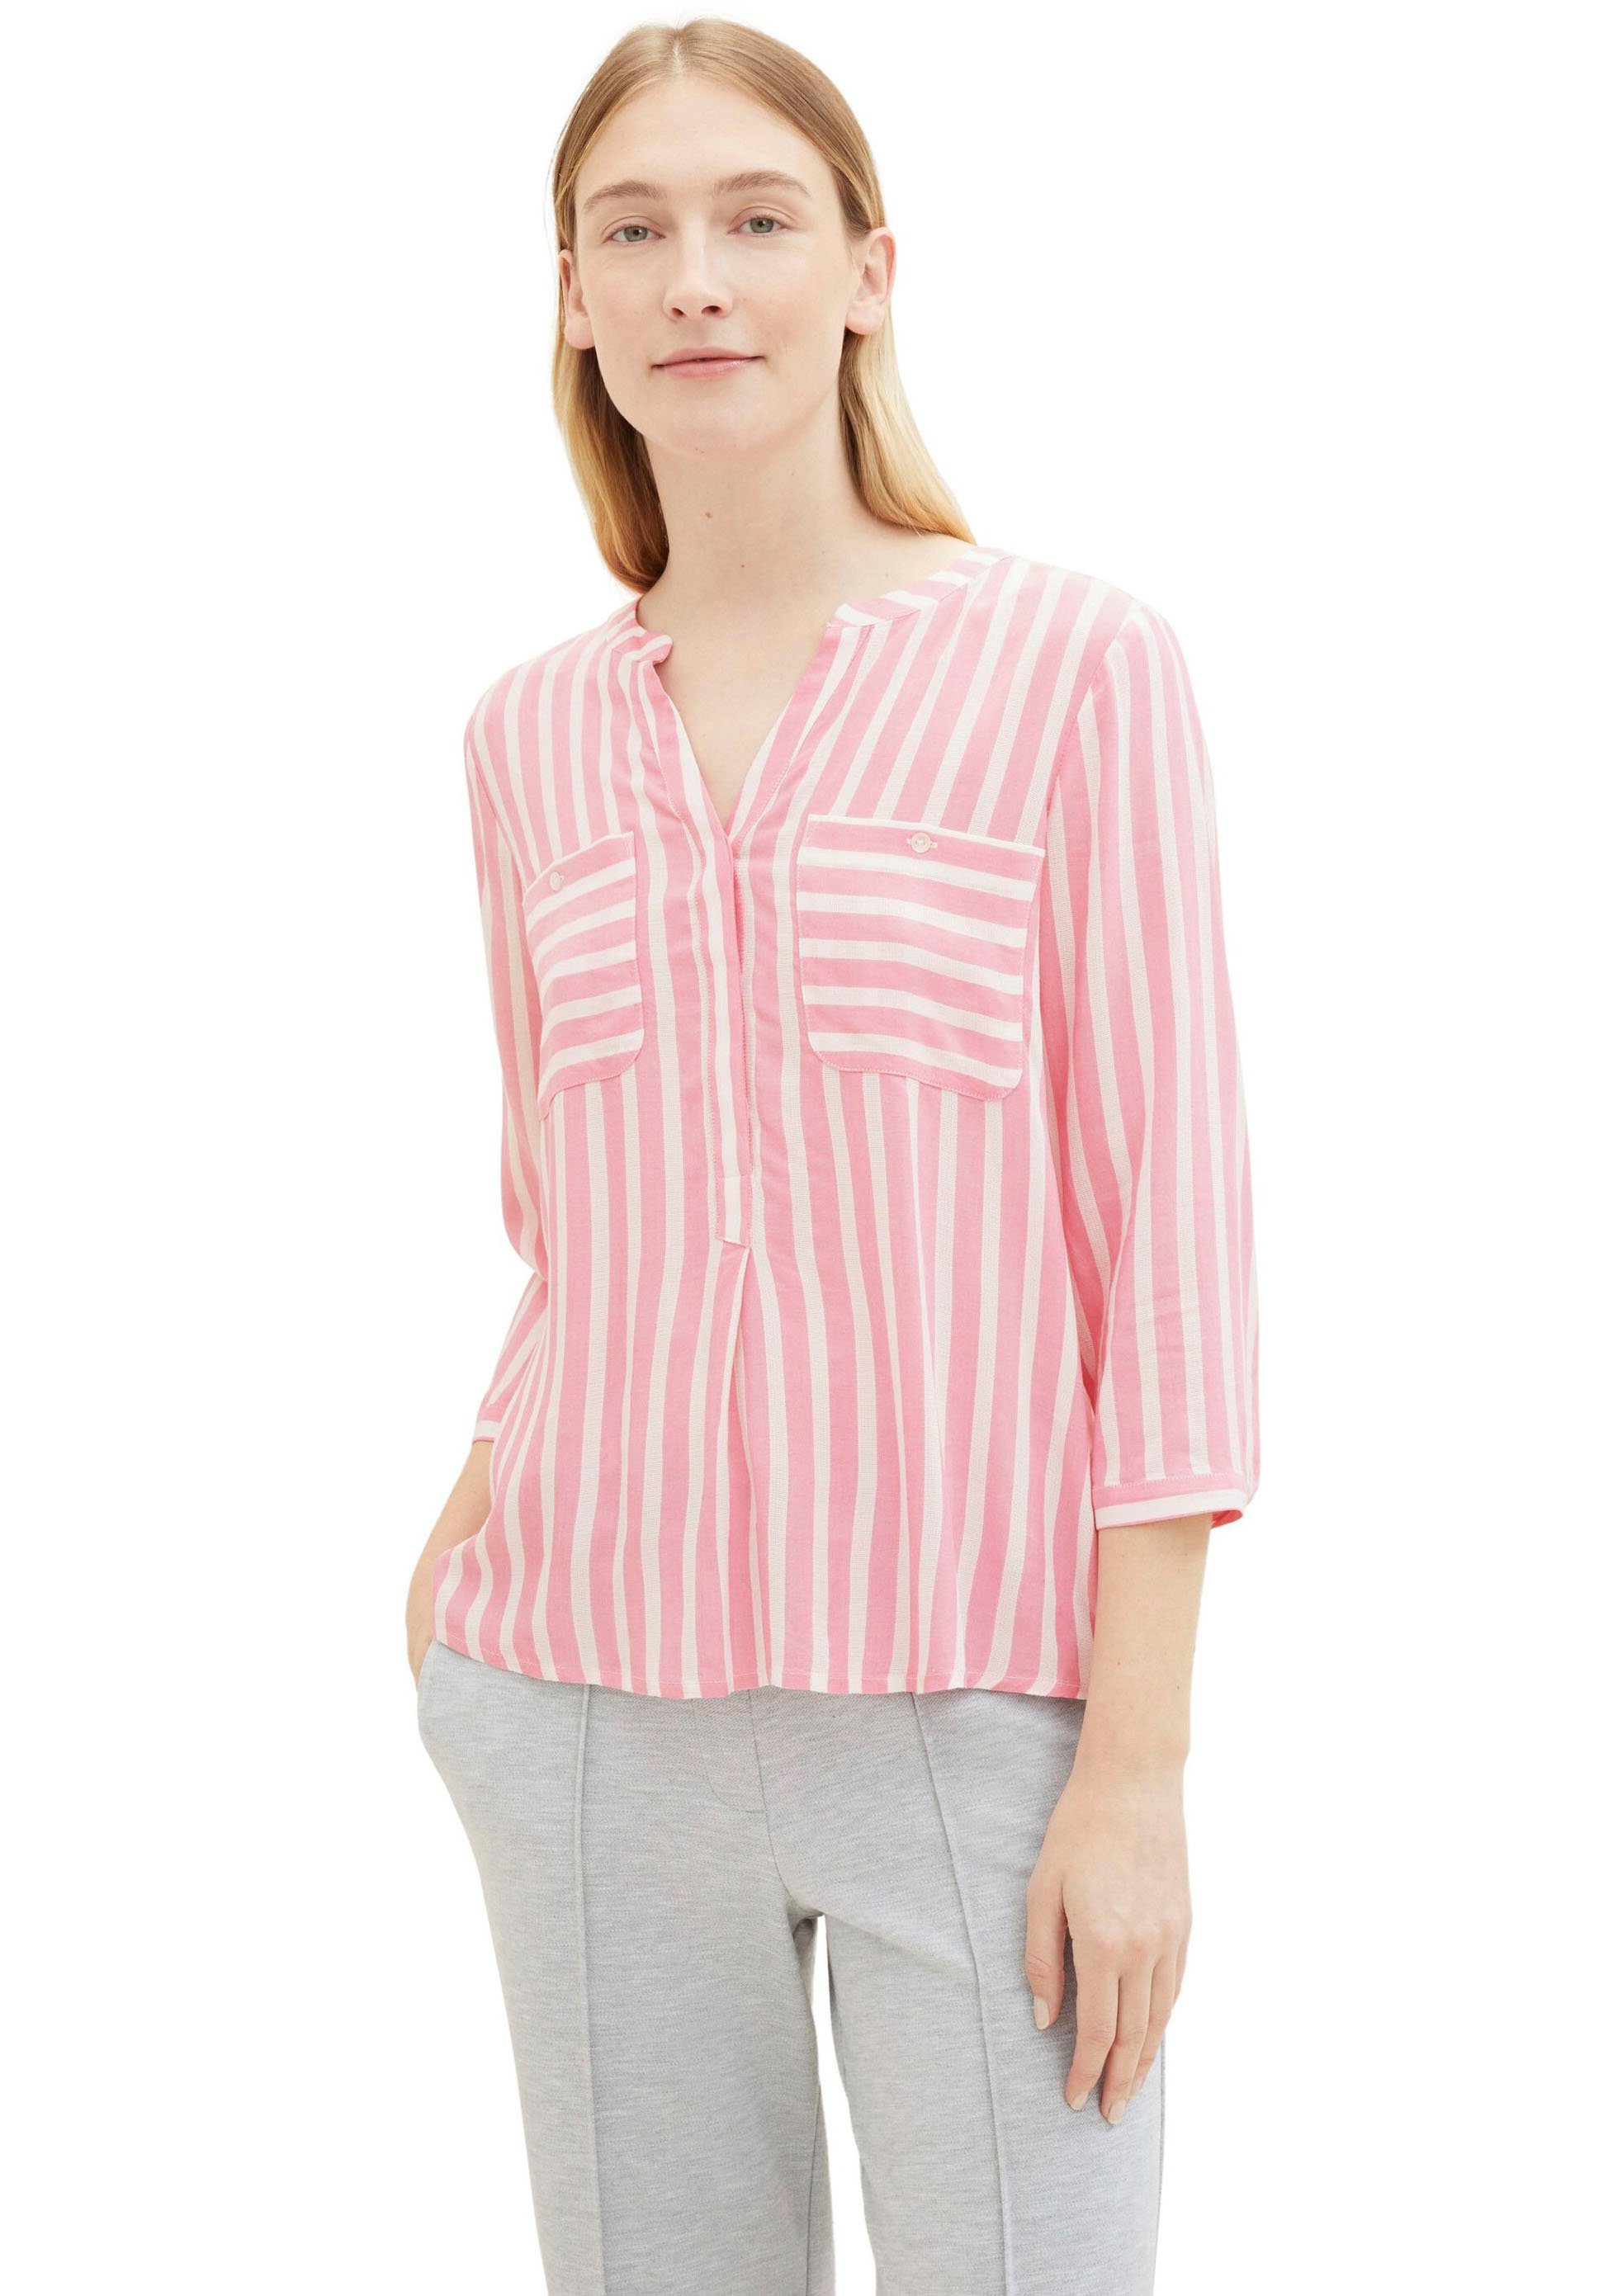 Rosa OPUS Blusen für Damen kaufen » Pinke OPUS Blusen | OTTO | Schlupfblusen